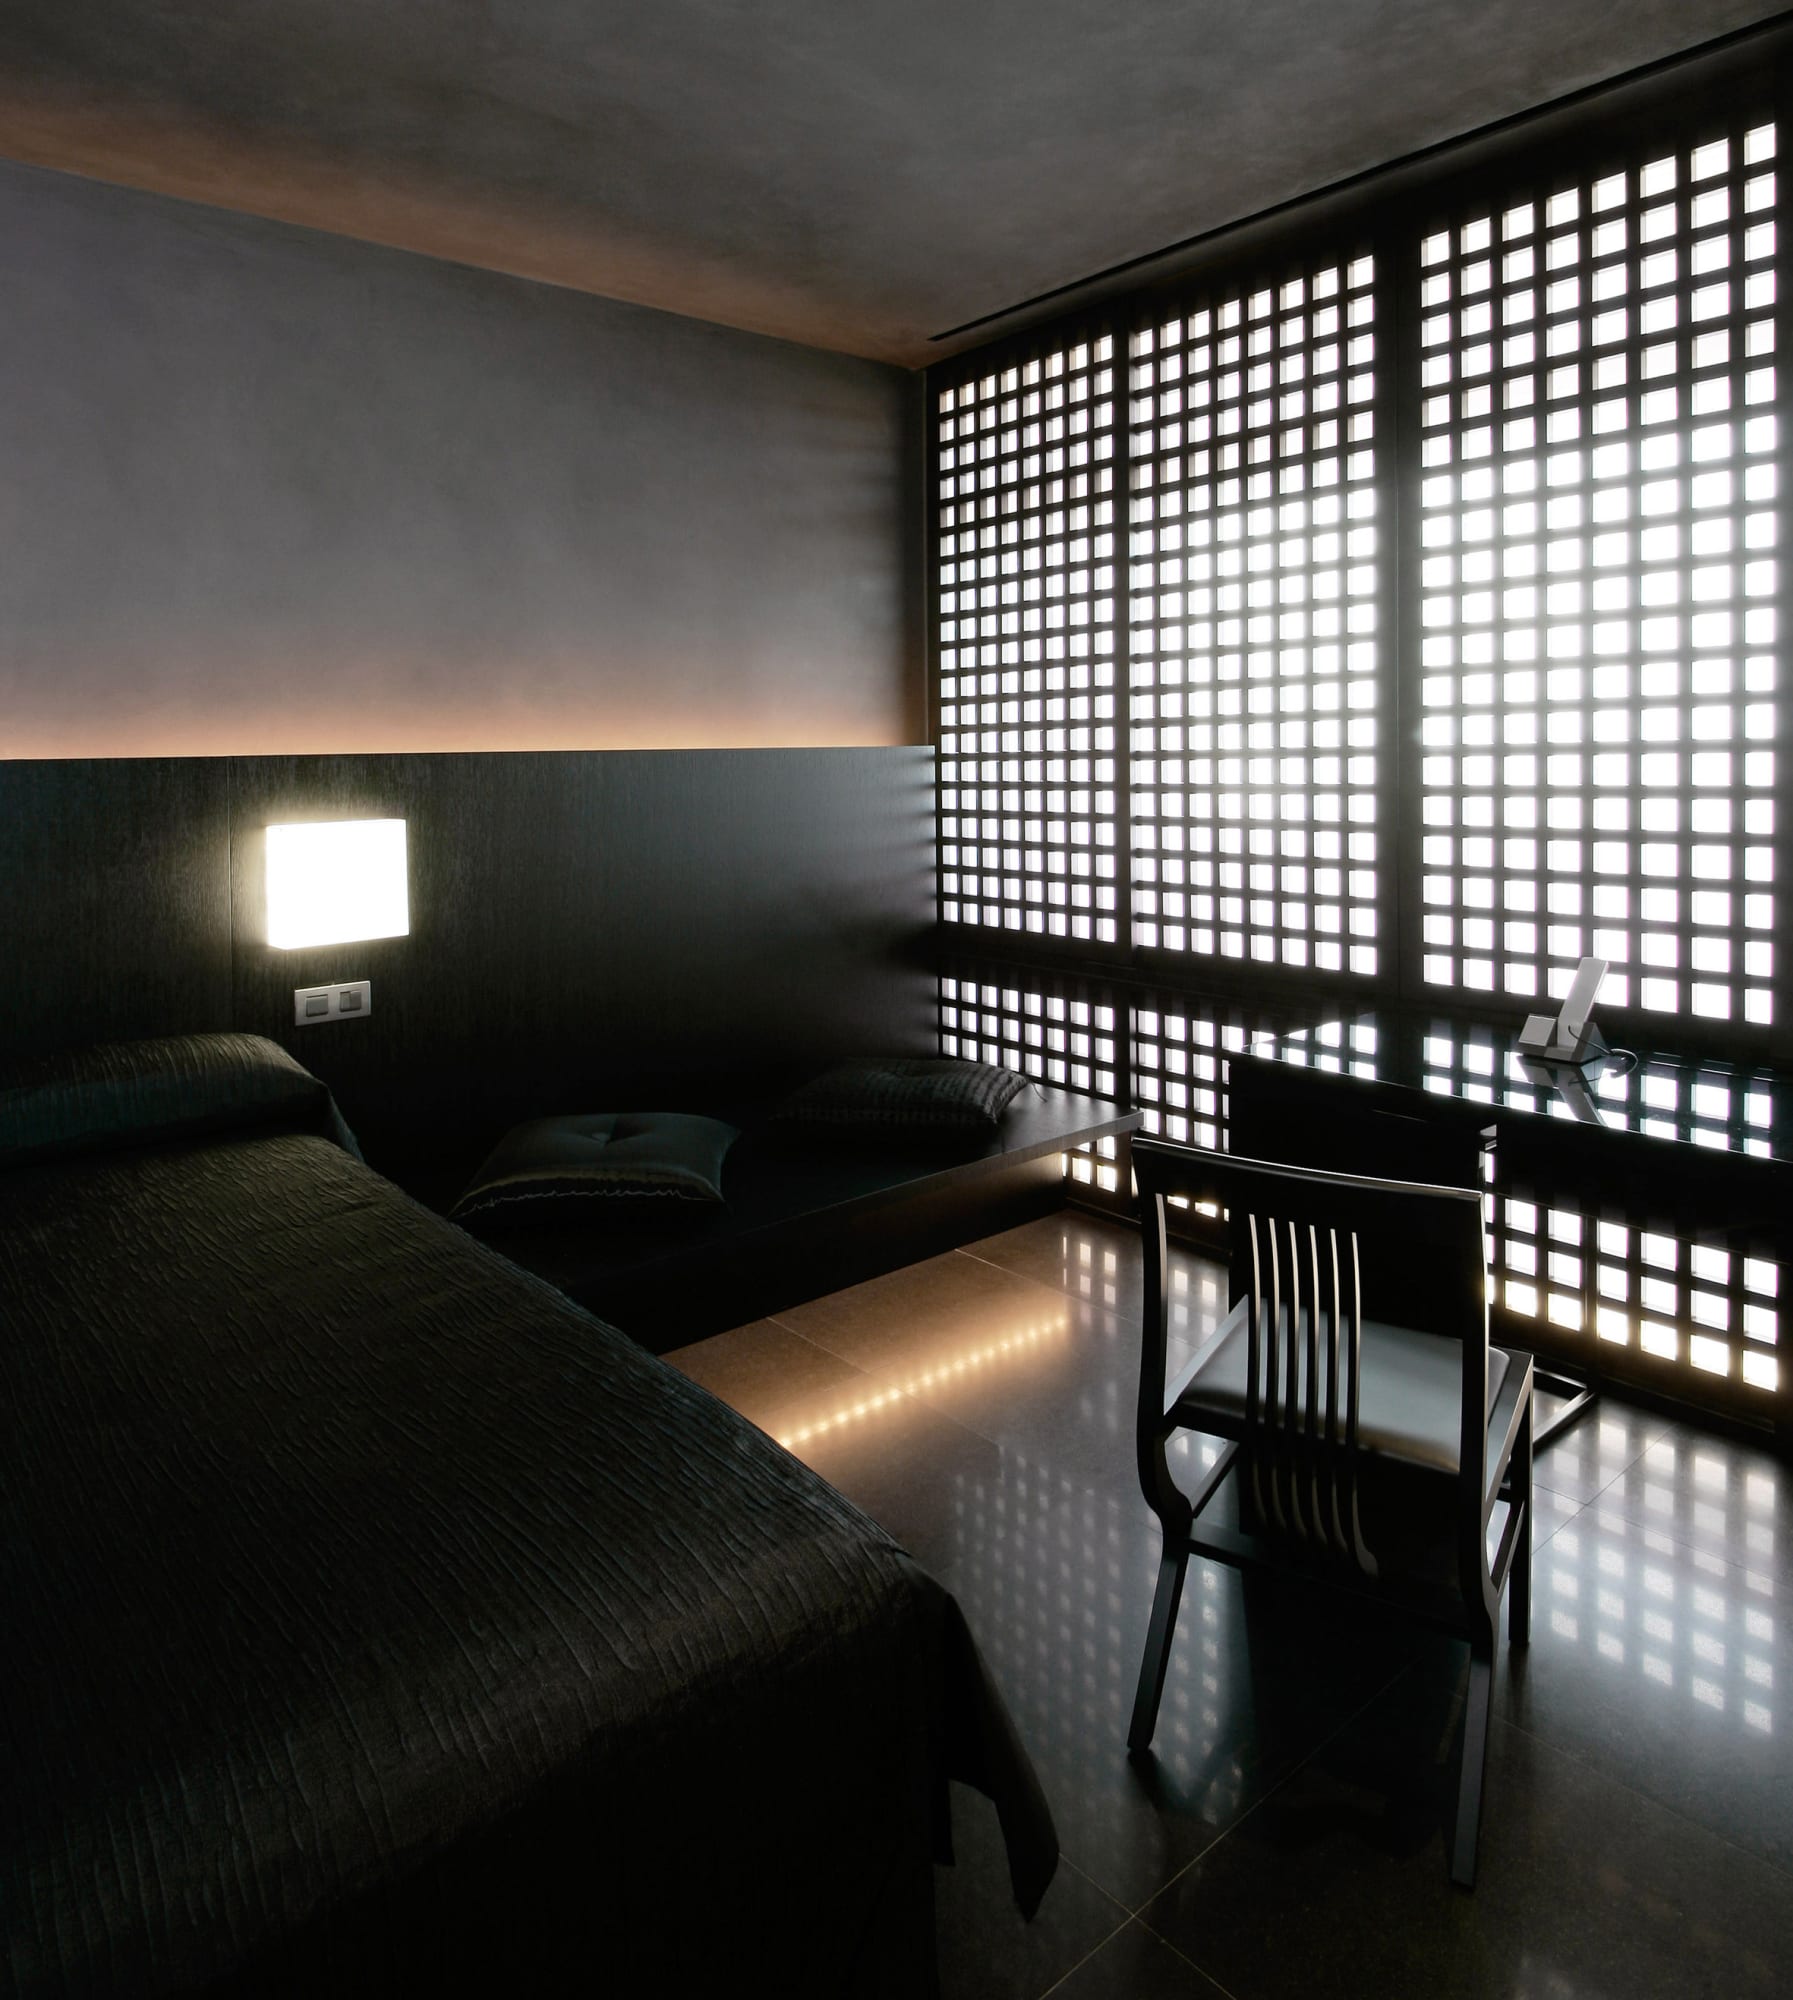 Hotel Puerta America - Interior Design - GiulianoFukuda